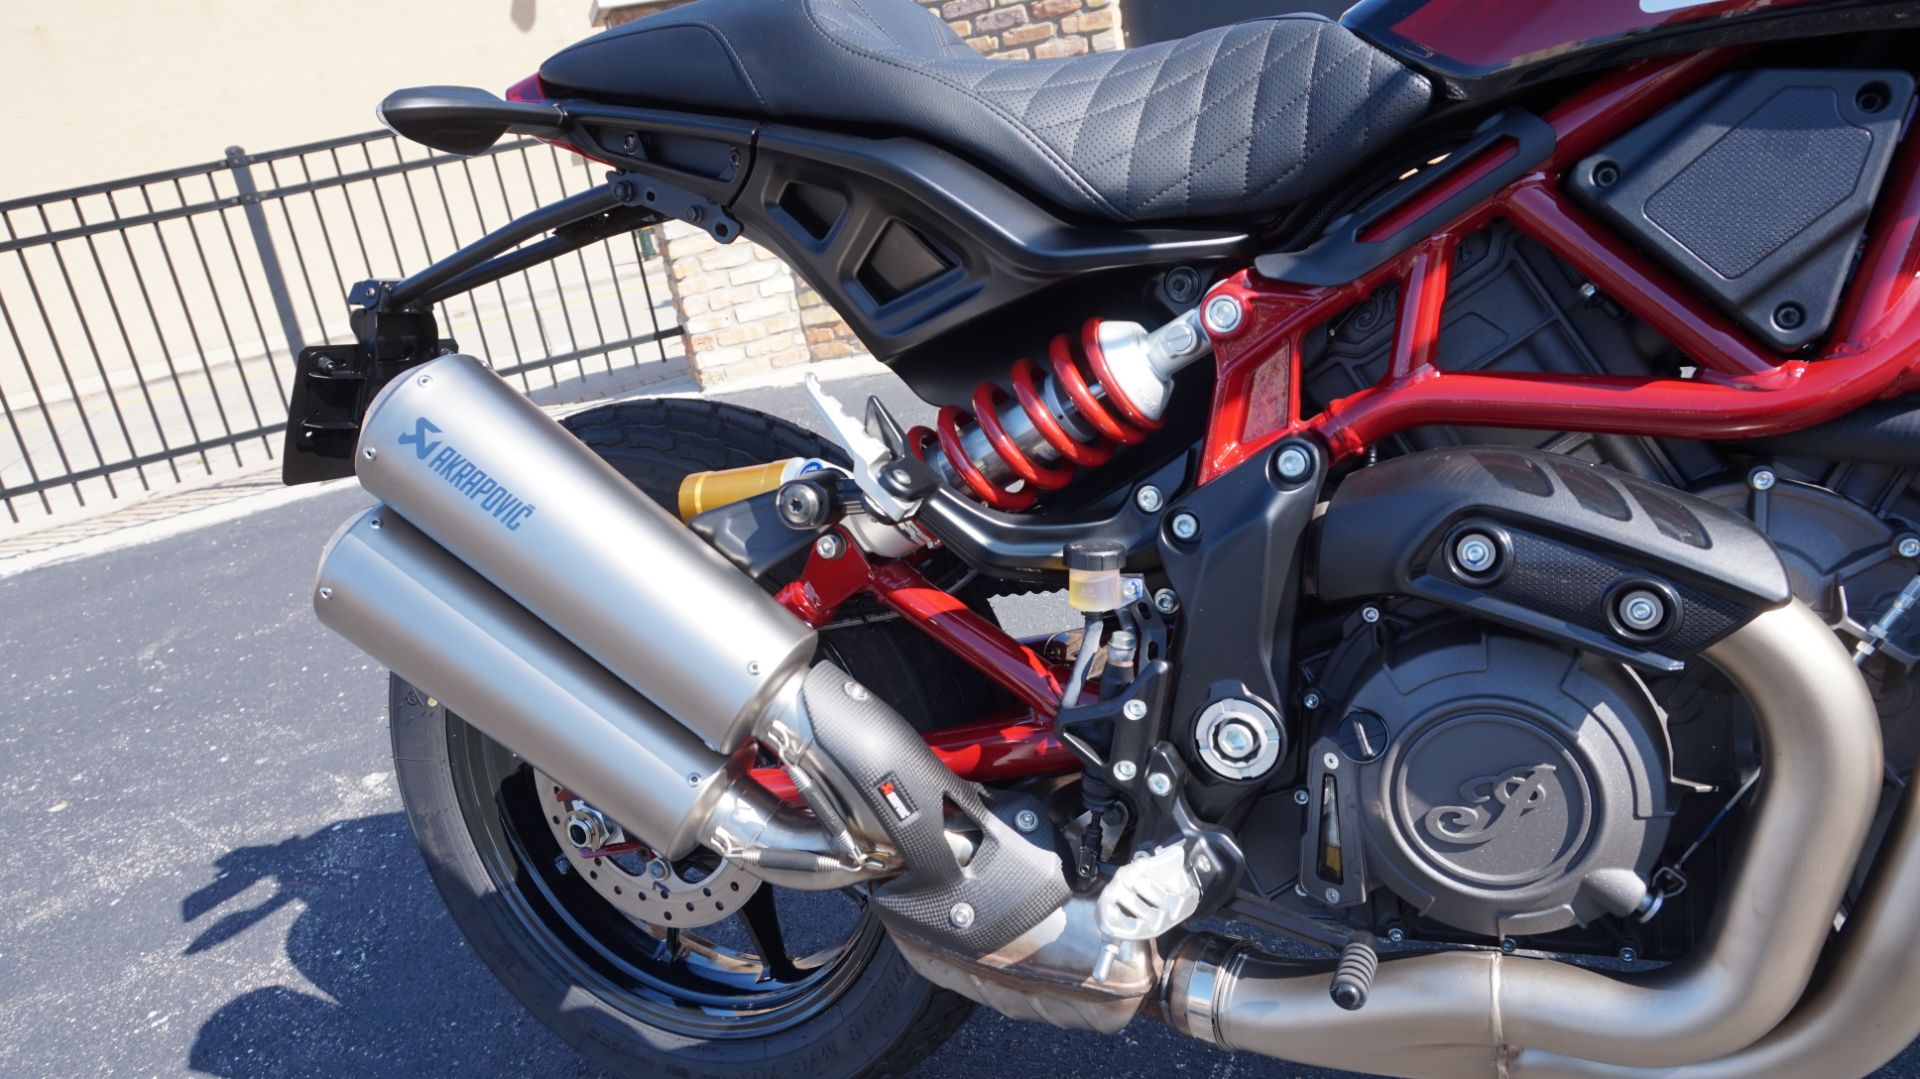 2019 Indian Motorcycle FTR™ 1200 S in Racine, Wisconsin - Photo 15